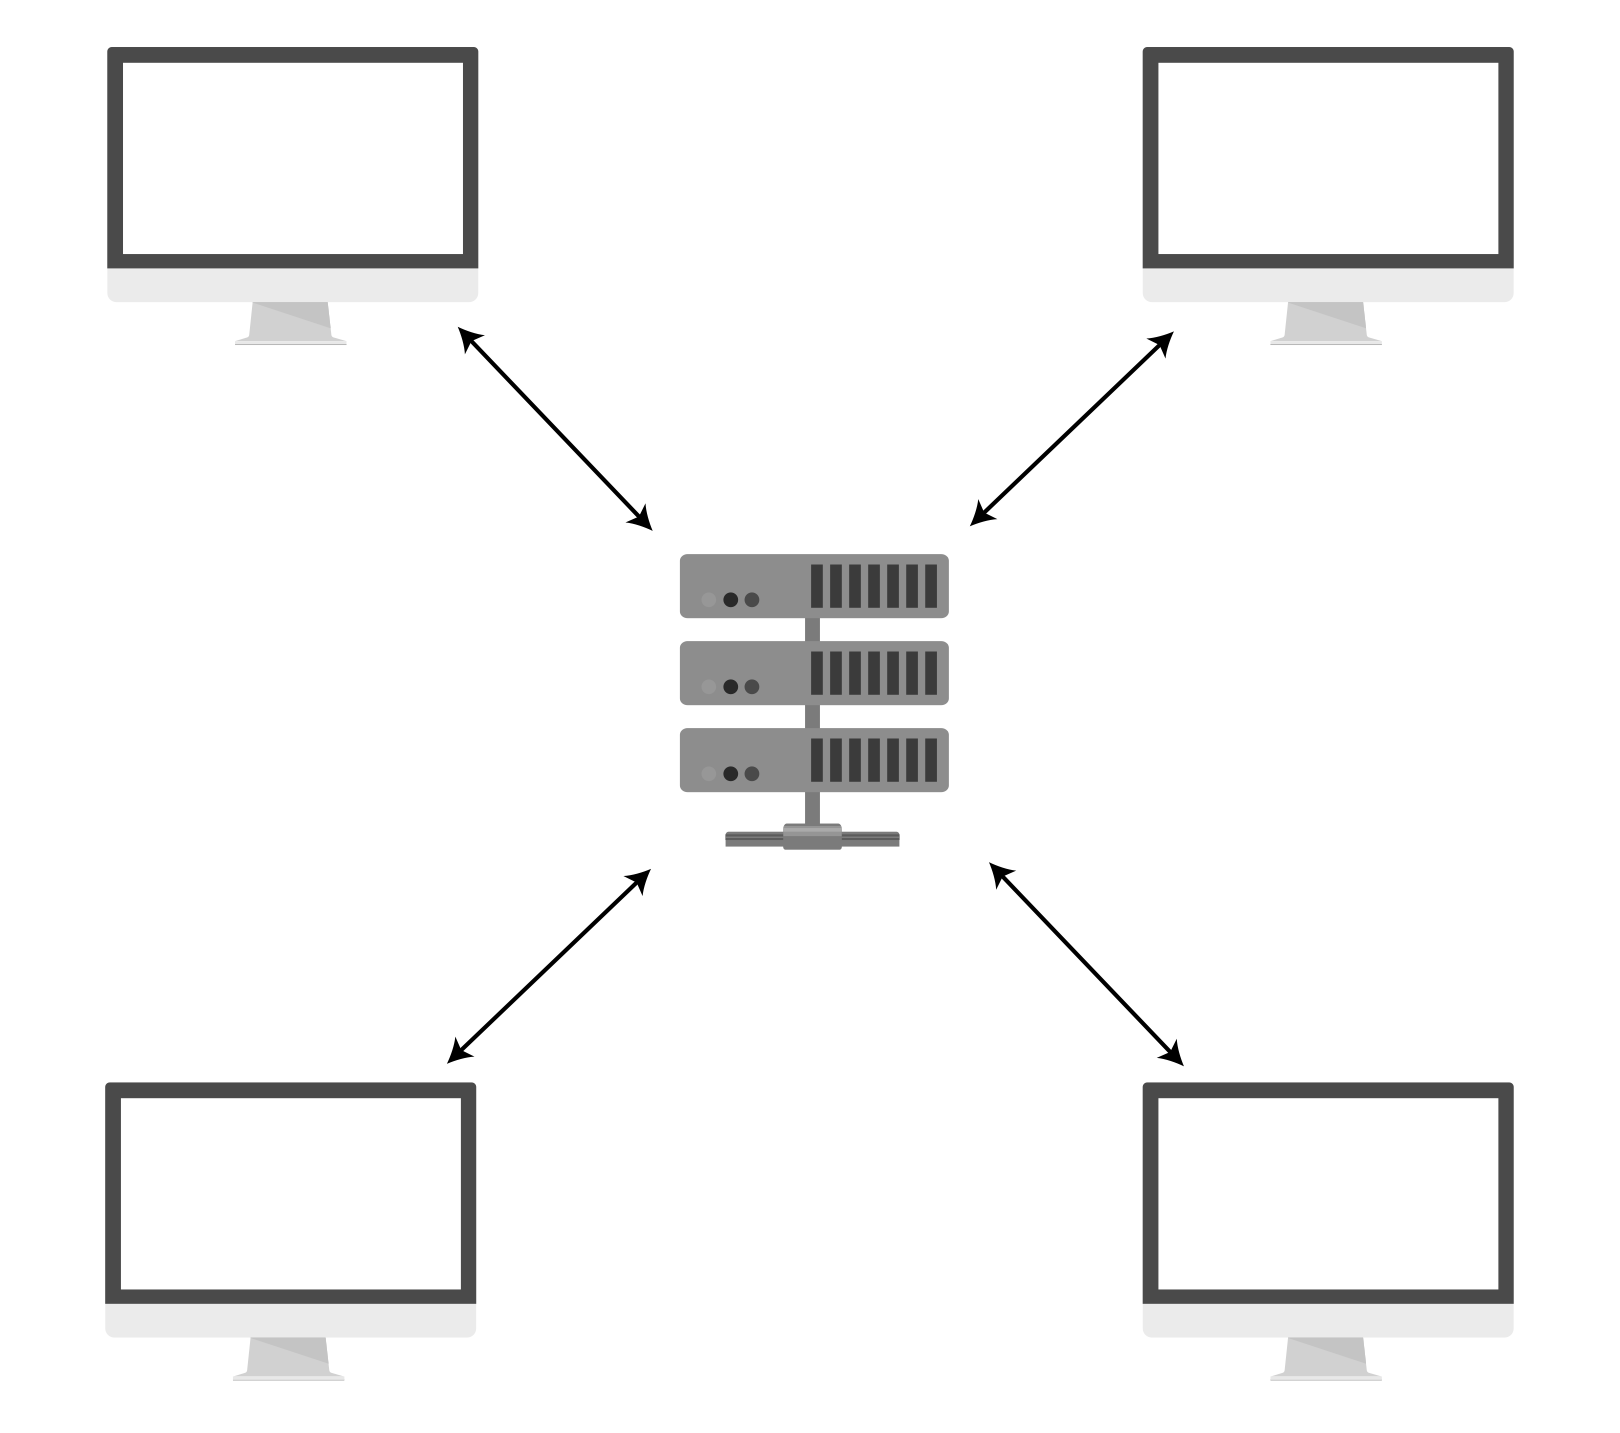 Une relation client-serveur typique : le serveur au centre, récupère et renvoie des données de 4 ordinateurs.